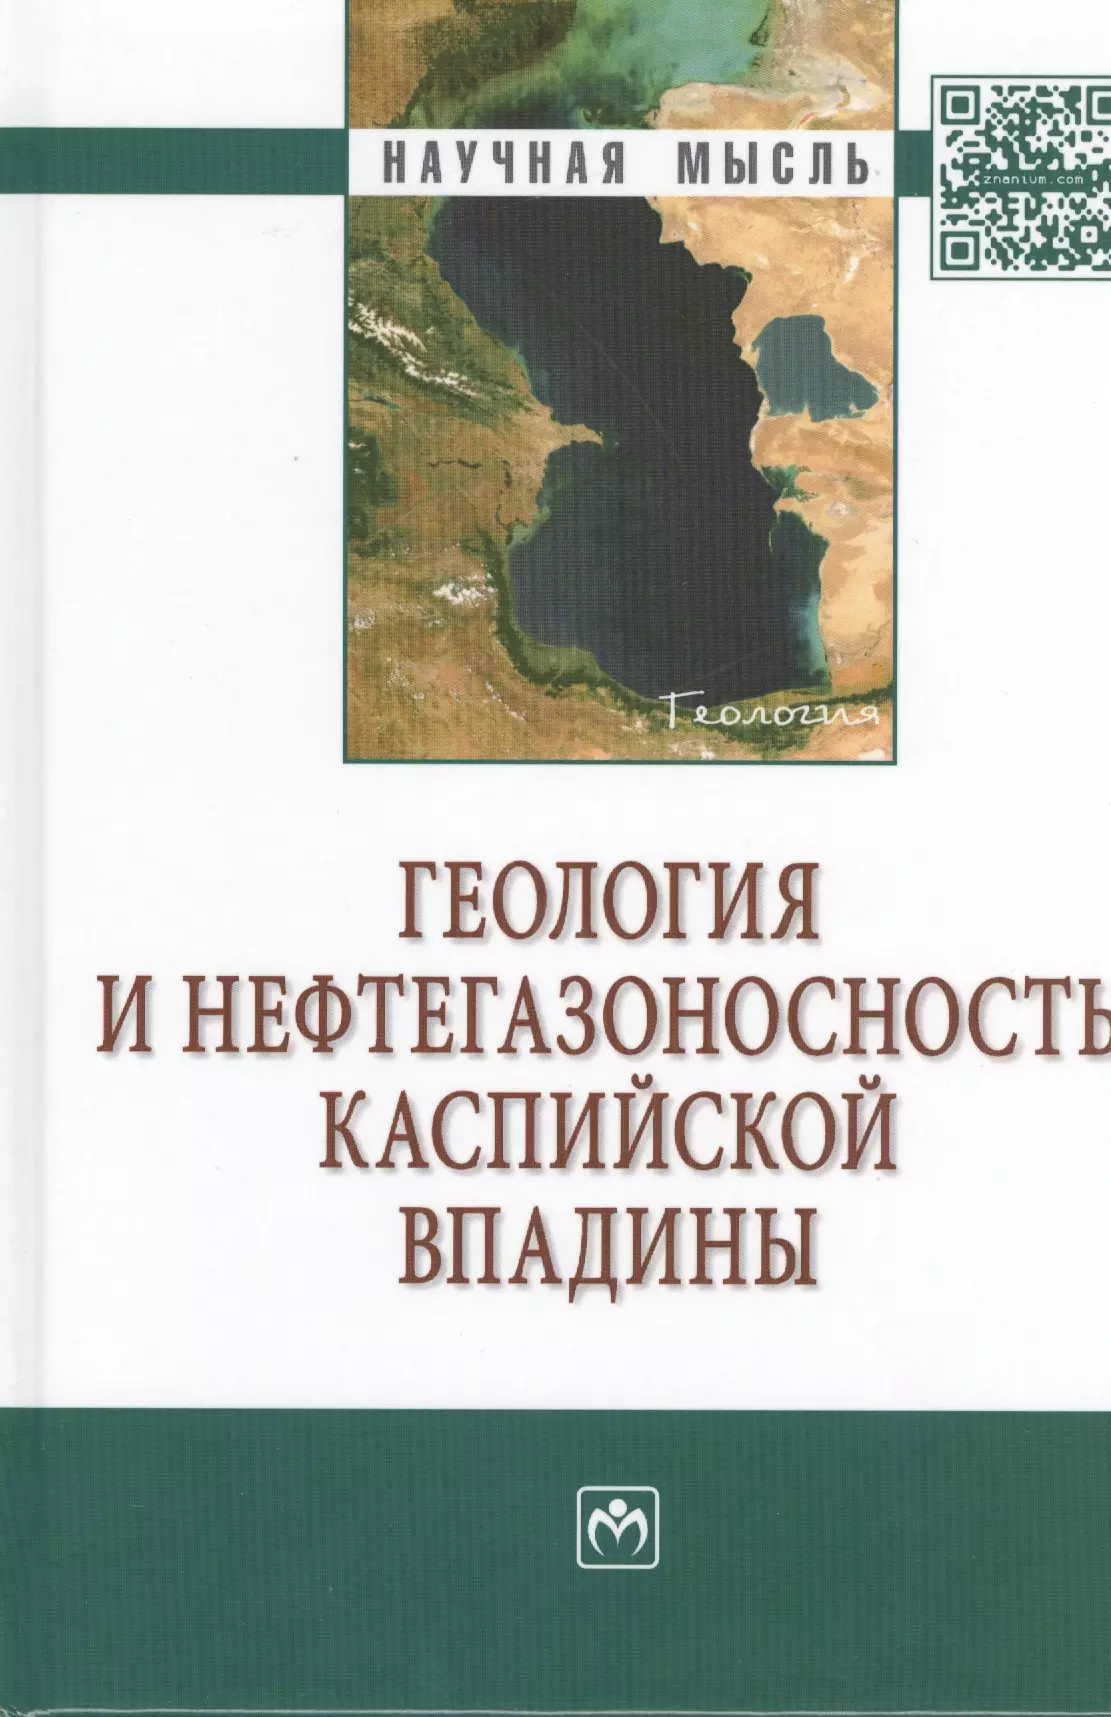 Алиева Судаба Аждар кызы - Геология и нефтегазоносность Каспийской впадины